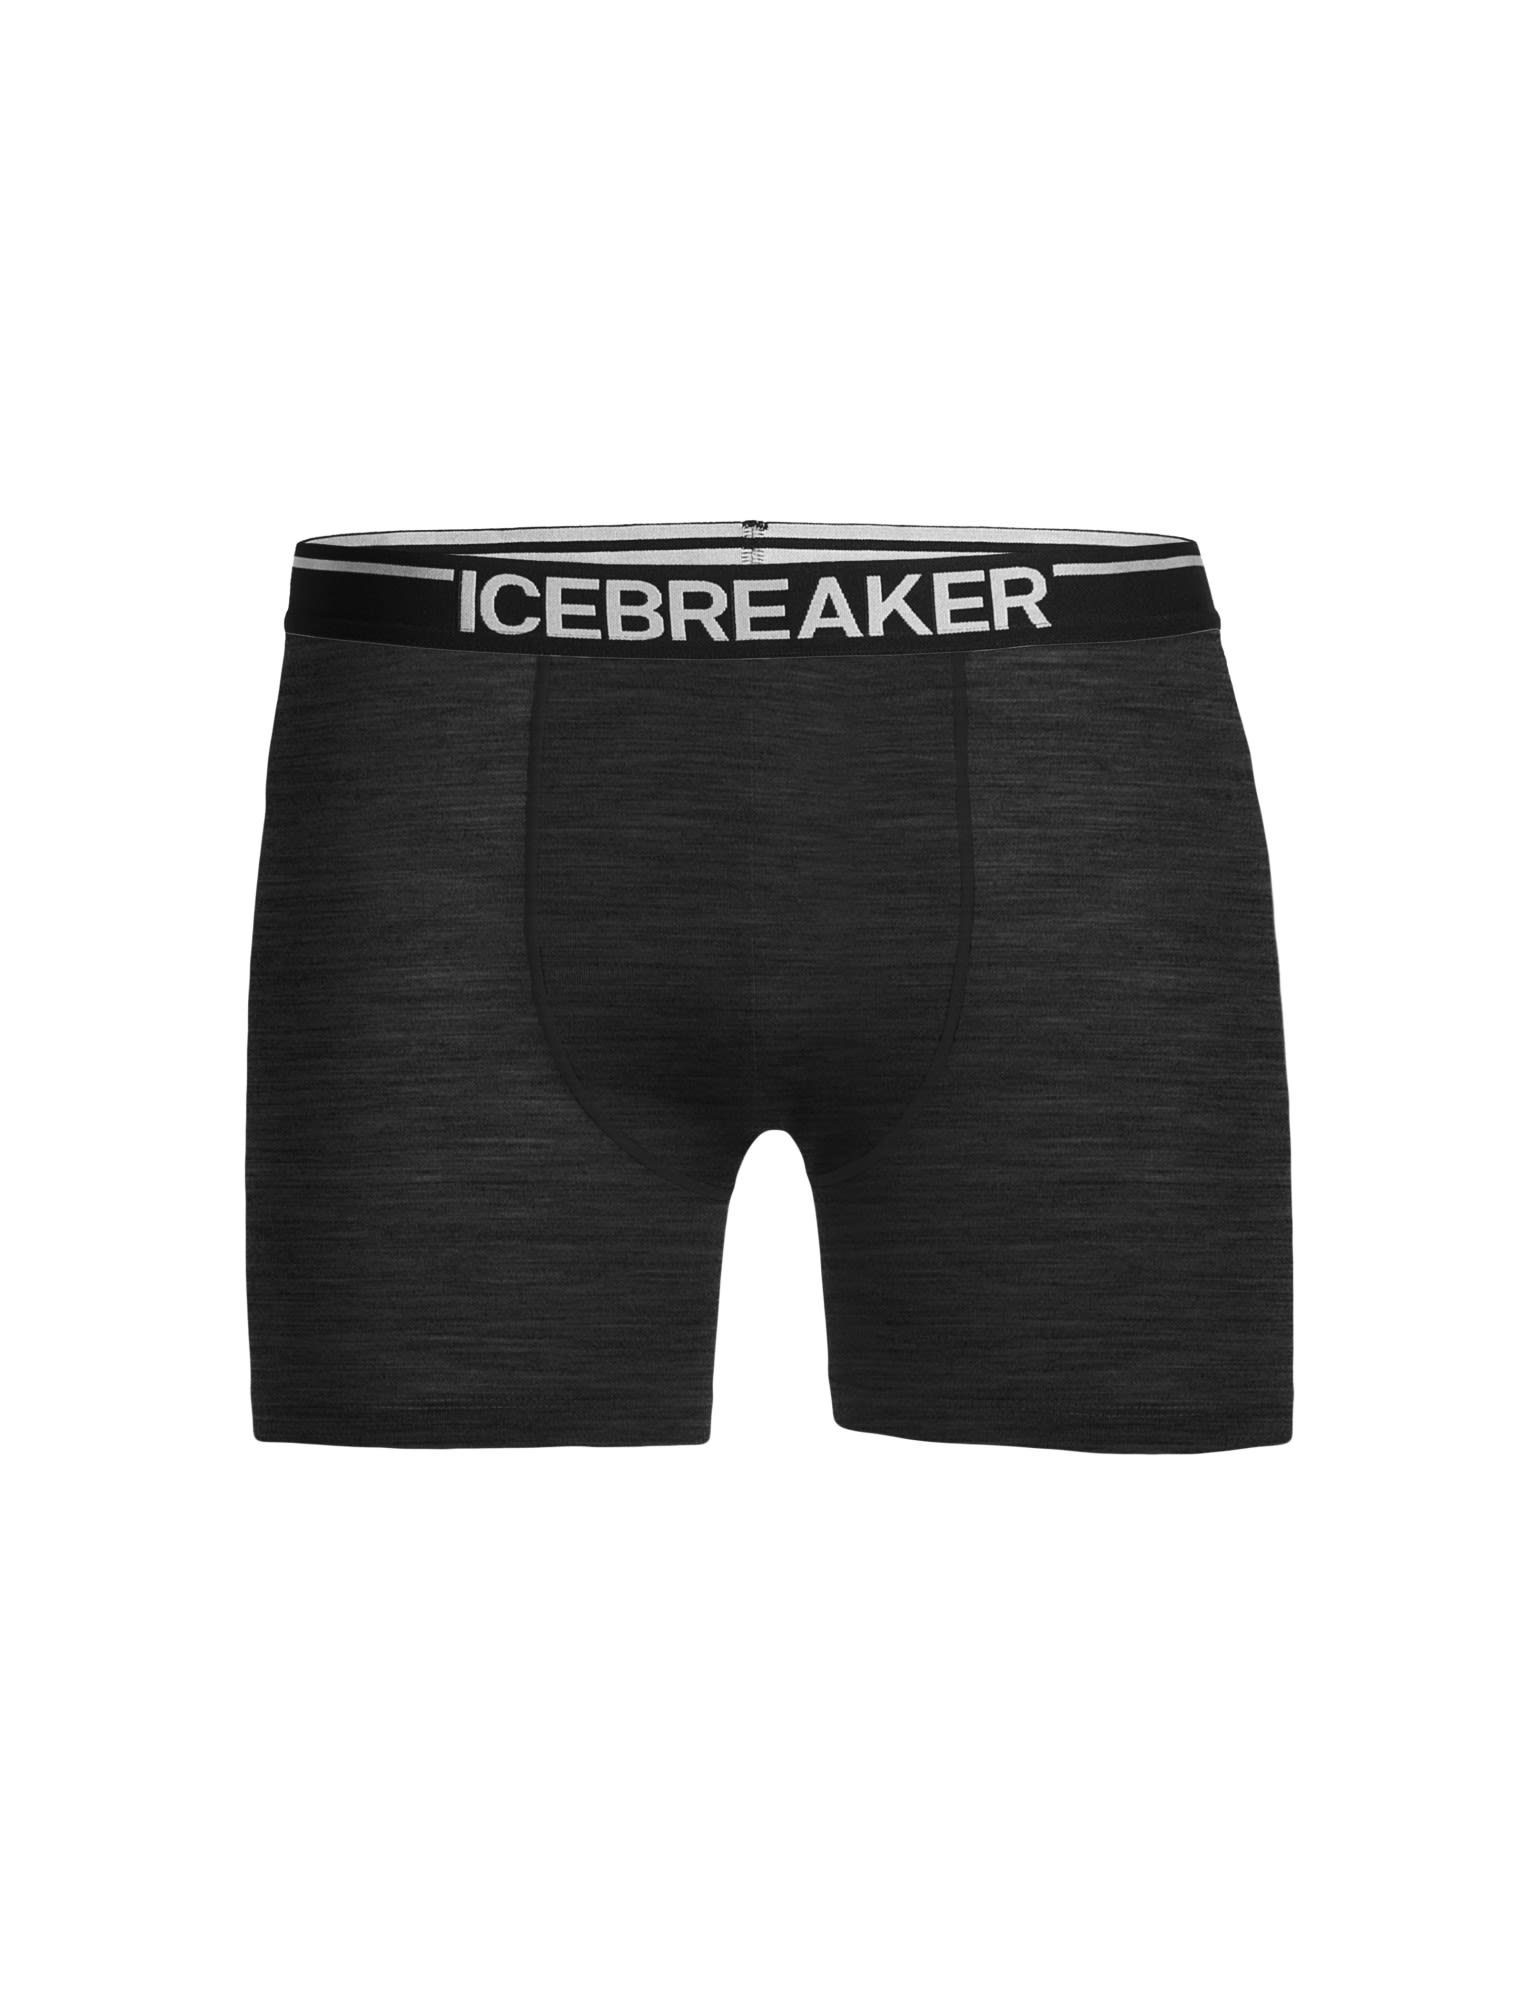 HTHR Anatomica Unterhose Grey M Boxers Kurze Icebreaker Lange Icebreaker Herren